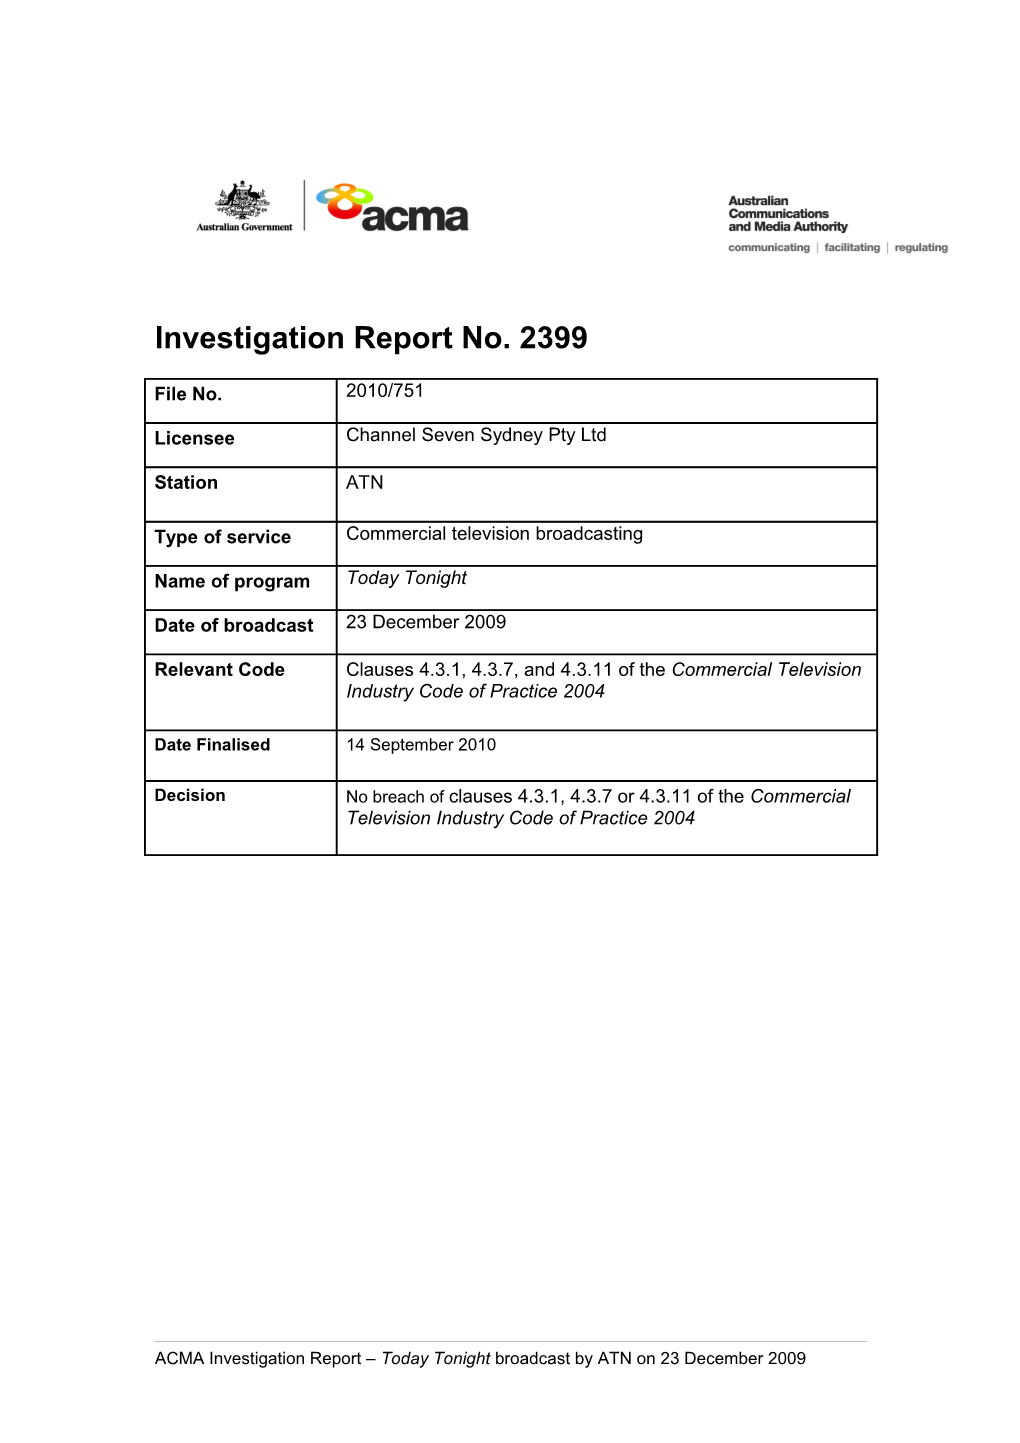 ATN - ACMA Investigation Report 2399